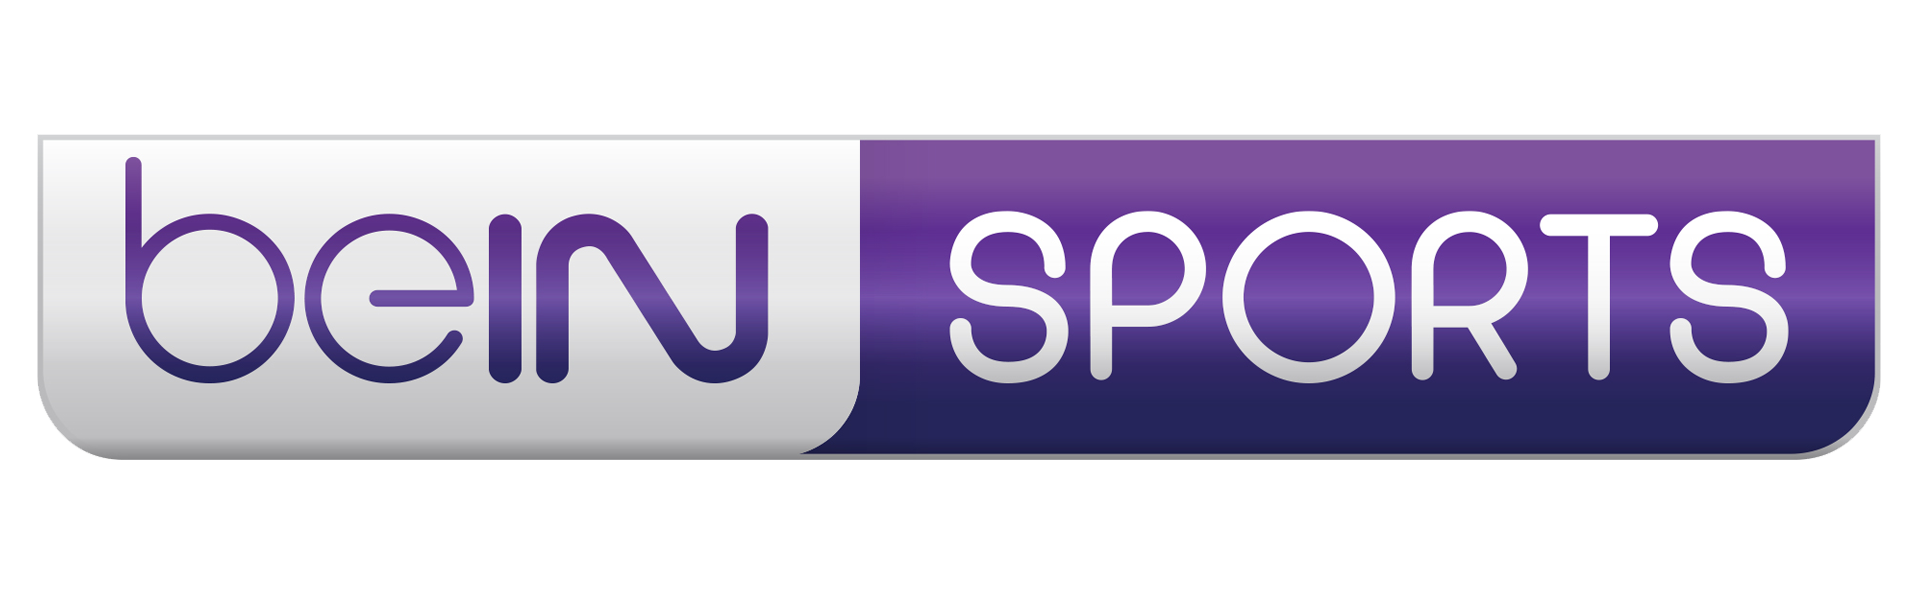 Bein sports 3. Bein Sport 1 logo. Логотип канала Bein Sports 2. Лого Беин Спортс. Bein Sports Max 1.